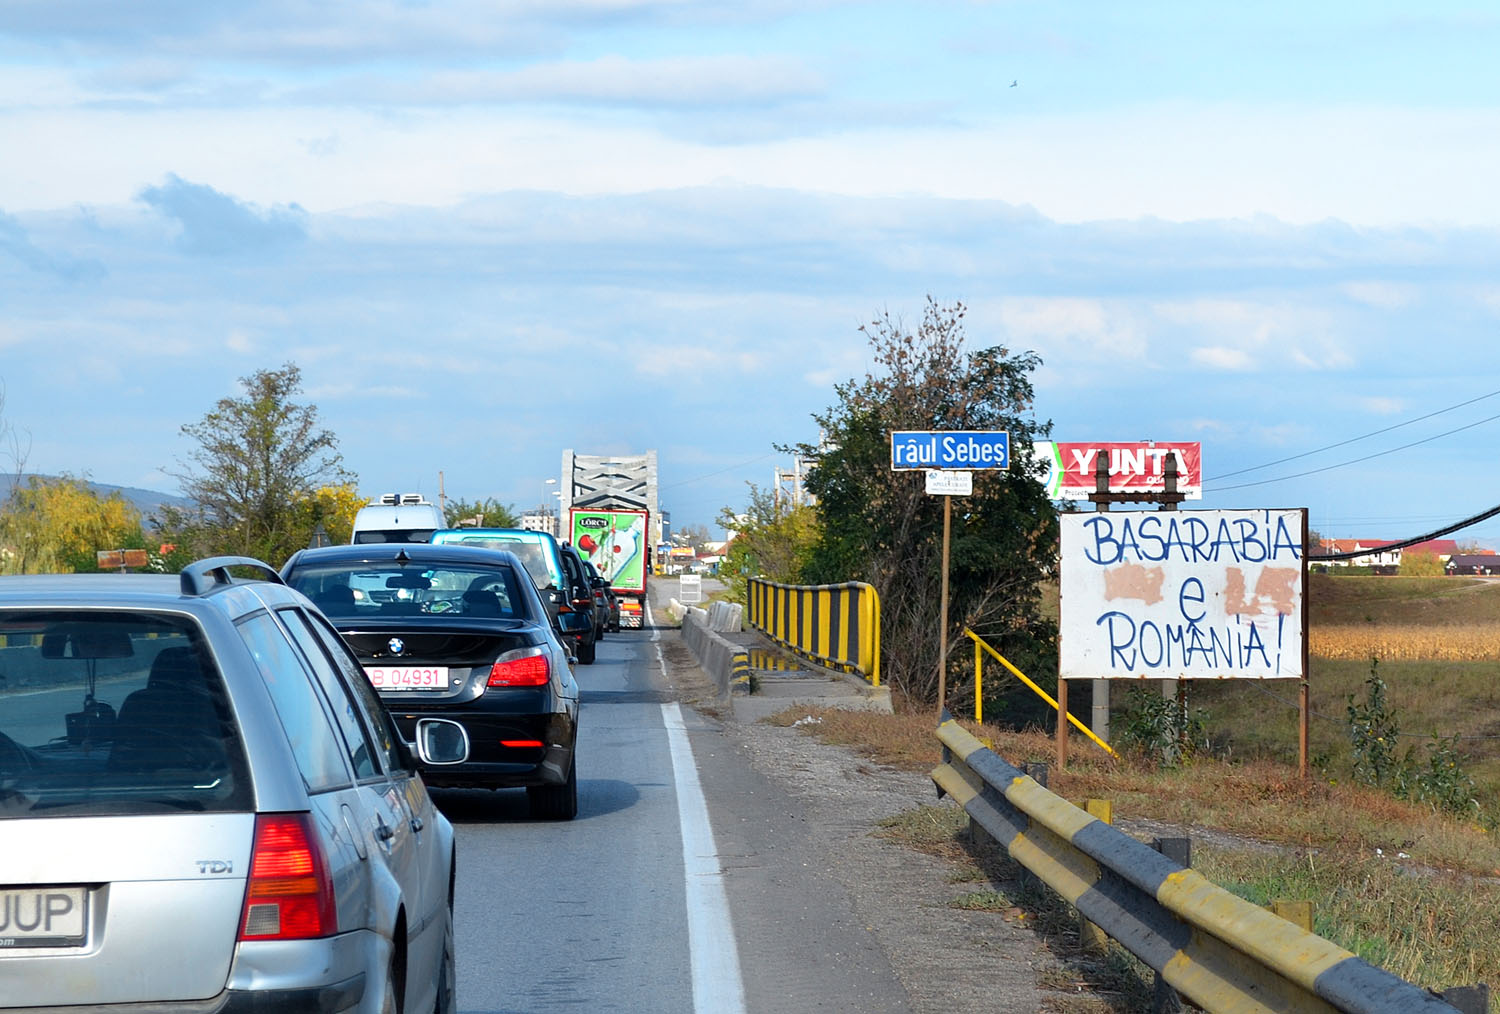 Besszarábia Romániához tartozik – hirdeti a felirat Gyulafehérvár közelében